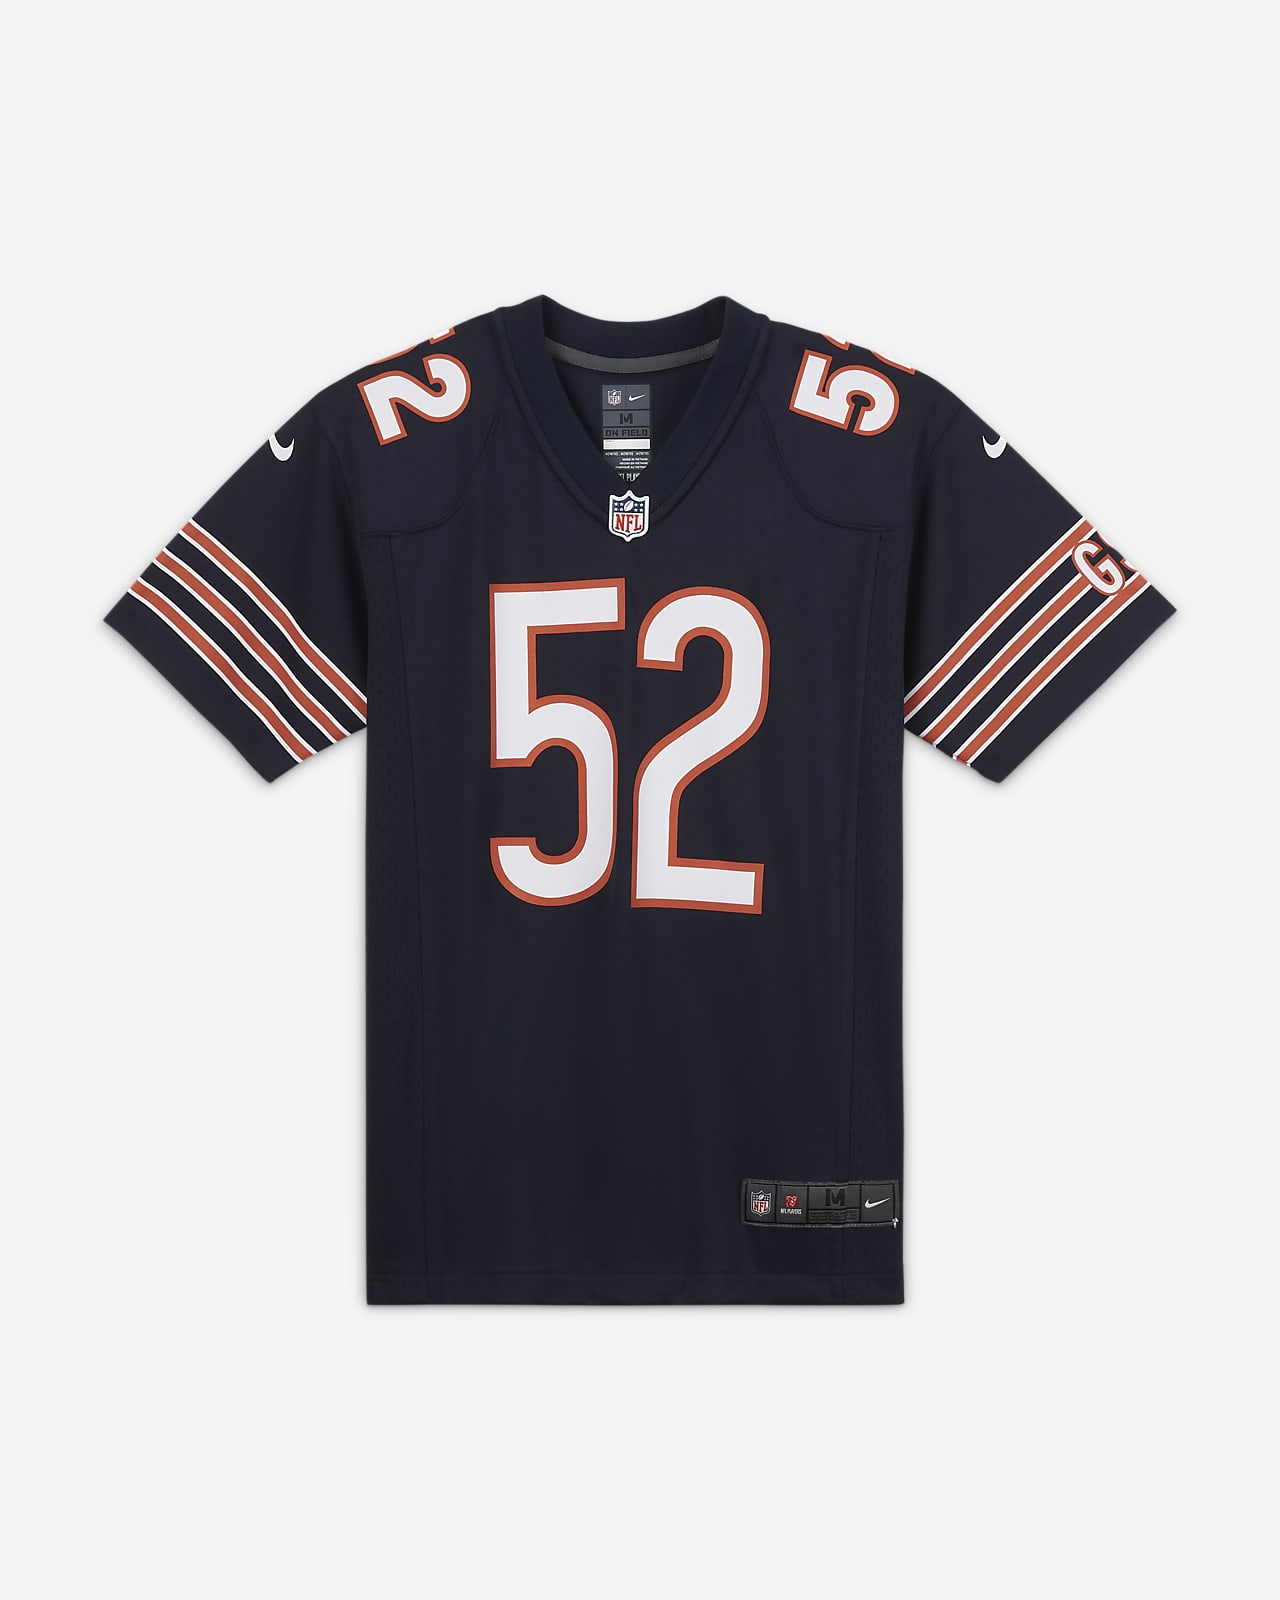 Zápasový dres na americký fotbal NFL Chicago Bears (Khalil Mack) pro větší děti